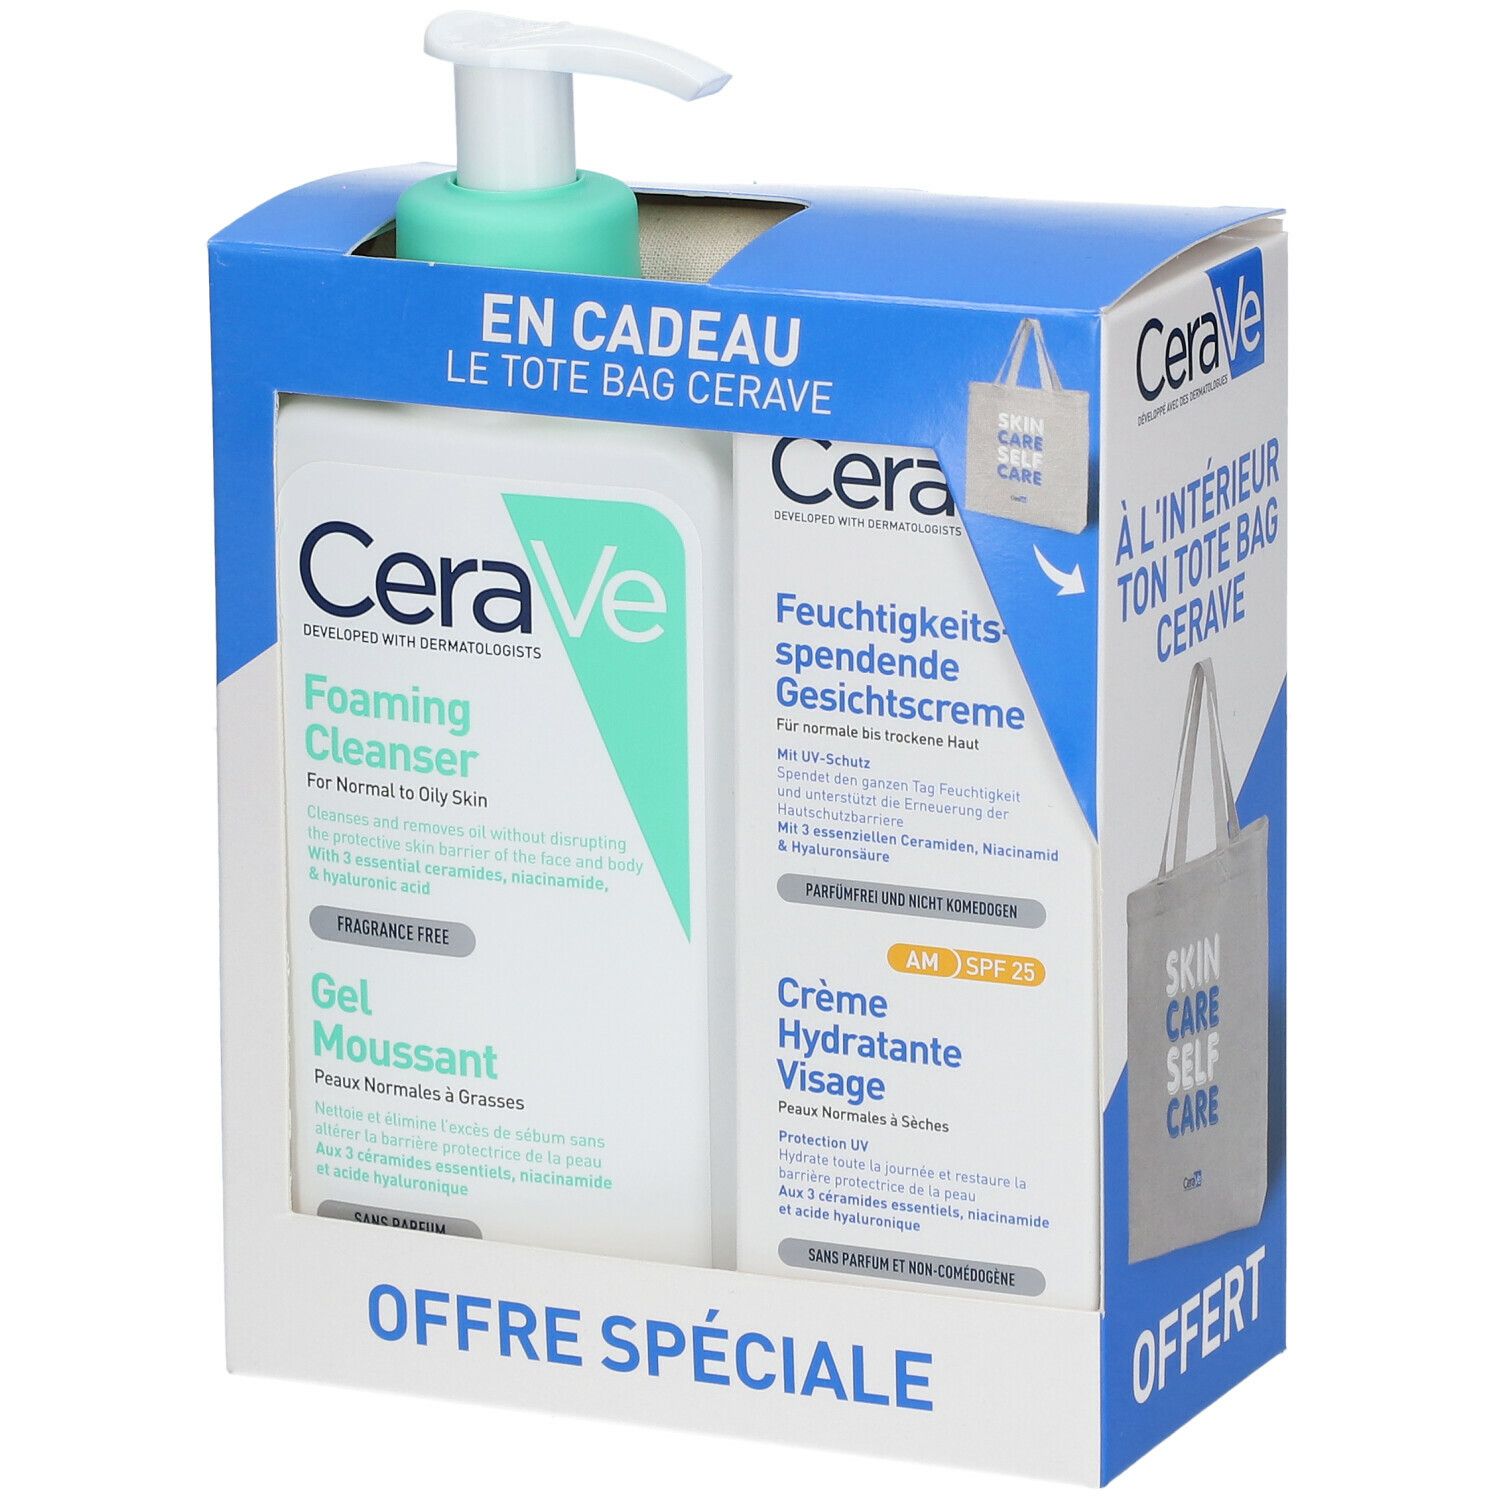 CeraVe Lot Gel Moussant 236ml + Crème Hydratante Visage Spf25 52ml + Tote bag offert